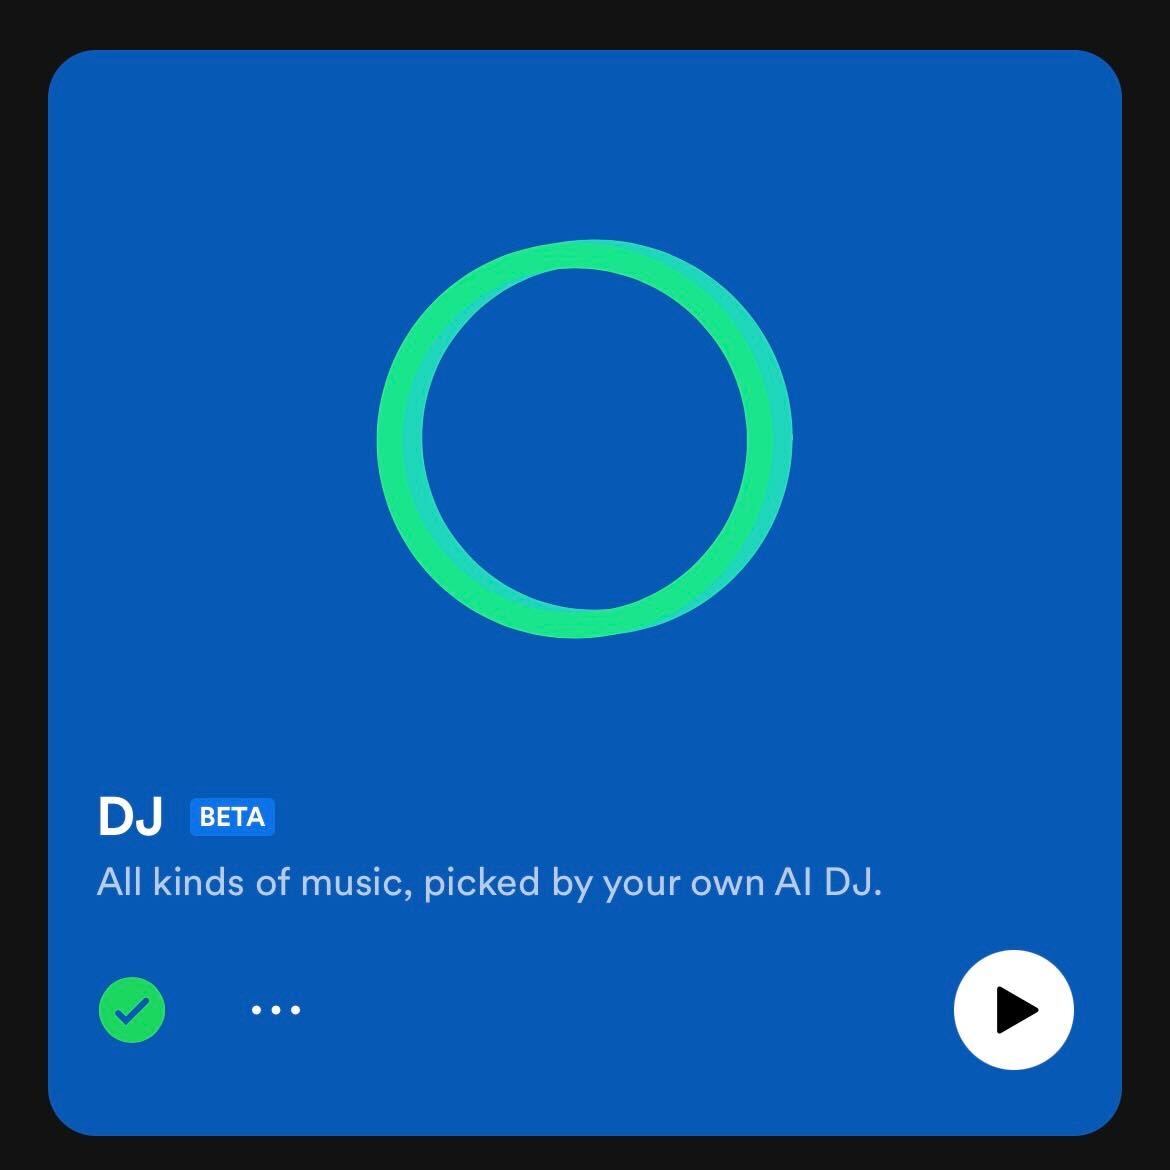 Tap on the Spotify AI DJ